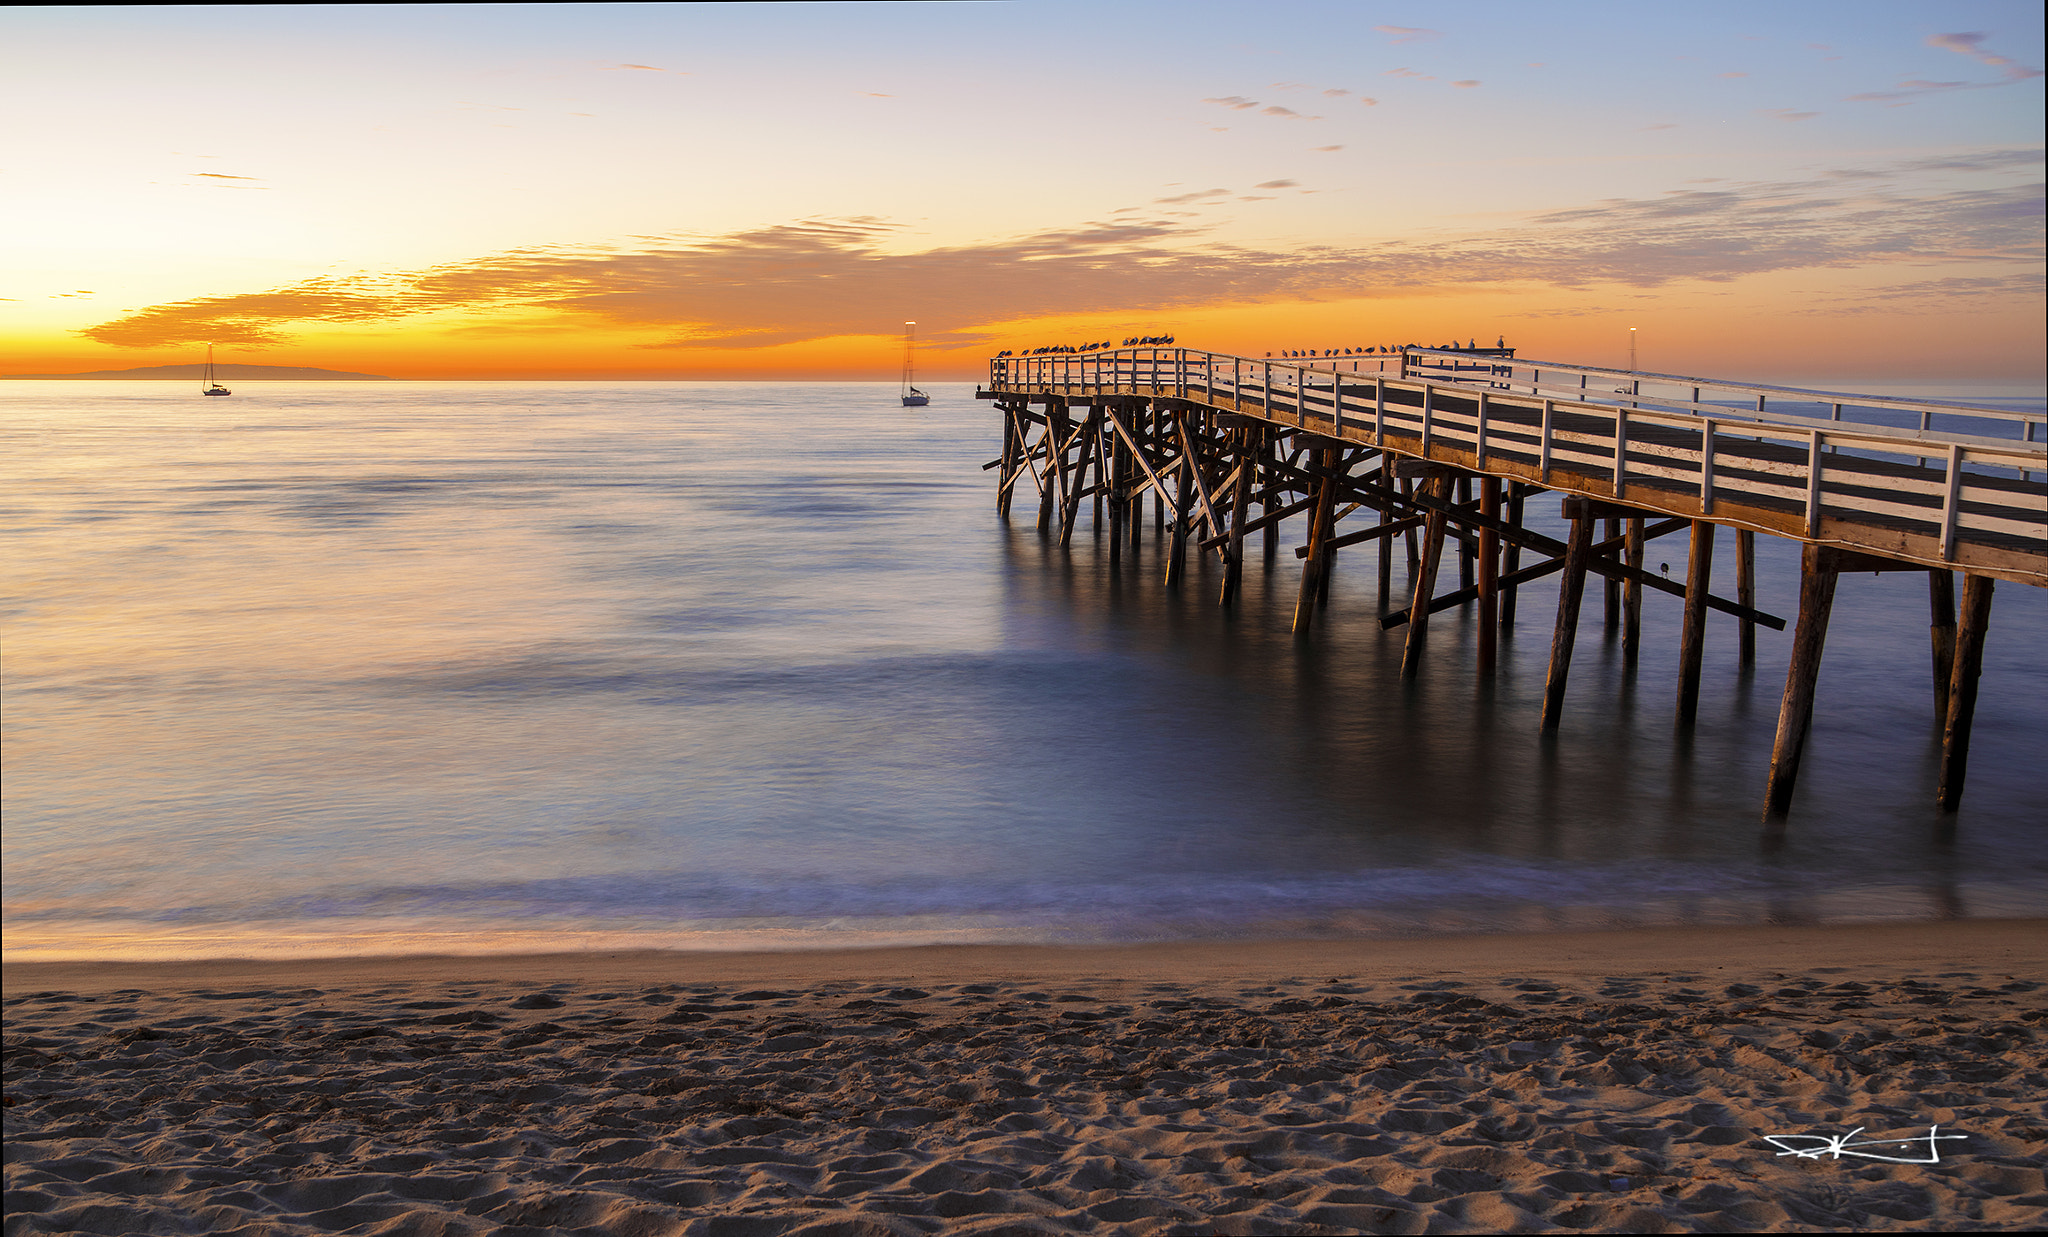 HD Pentax-DA645 28-45mm F4.5ED AW SR sample photo. Malibu pier sunrise photography